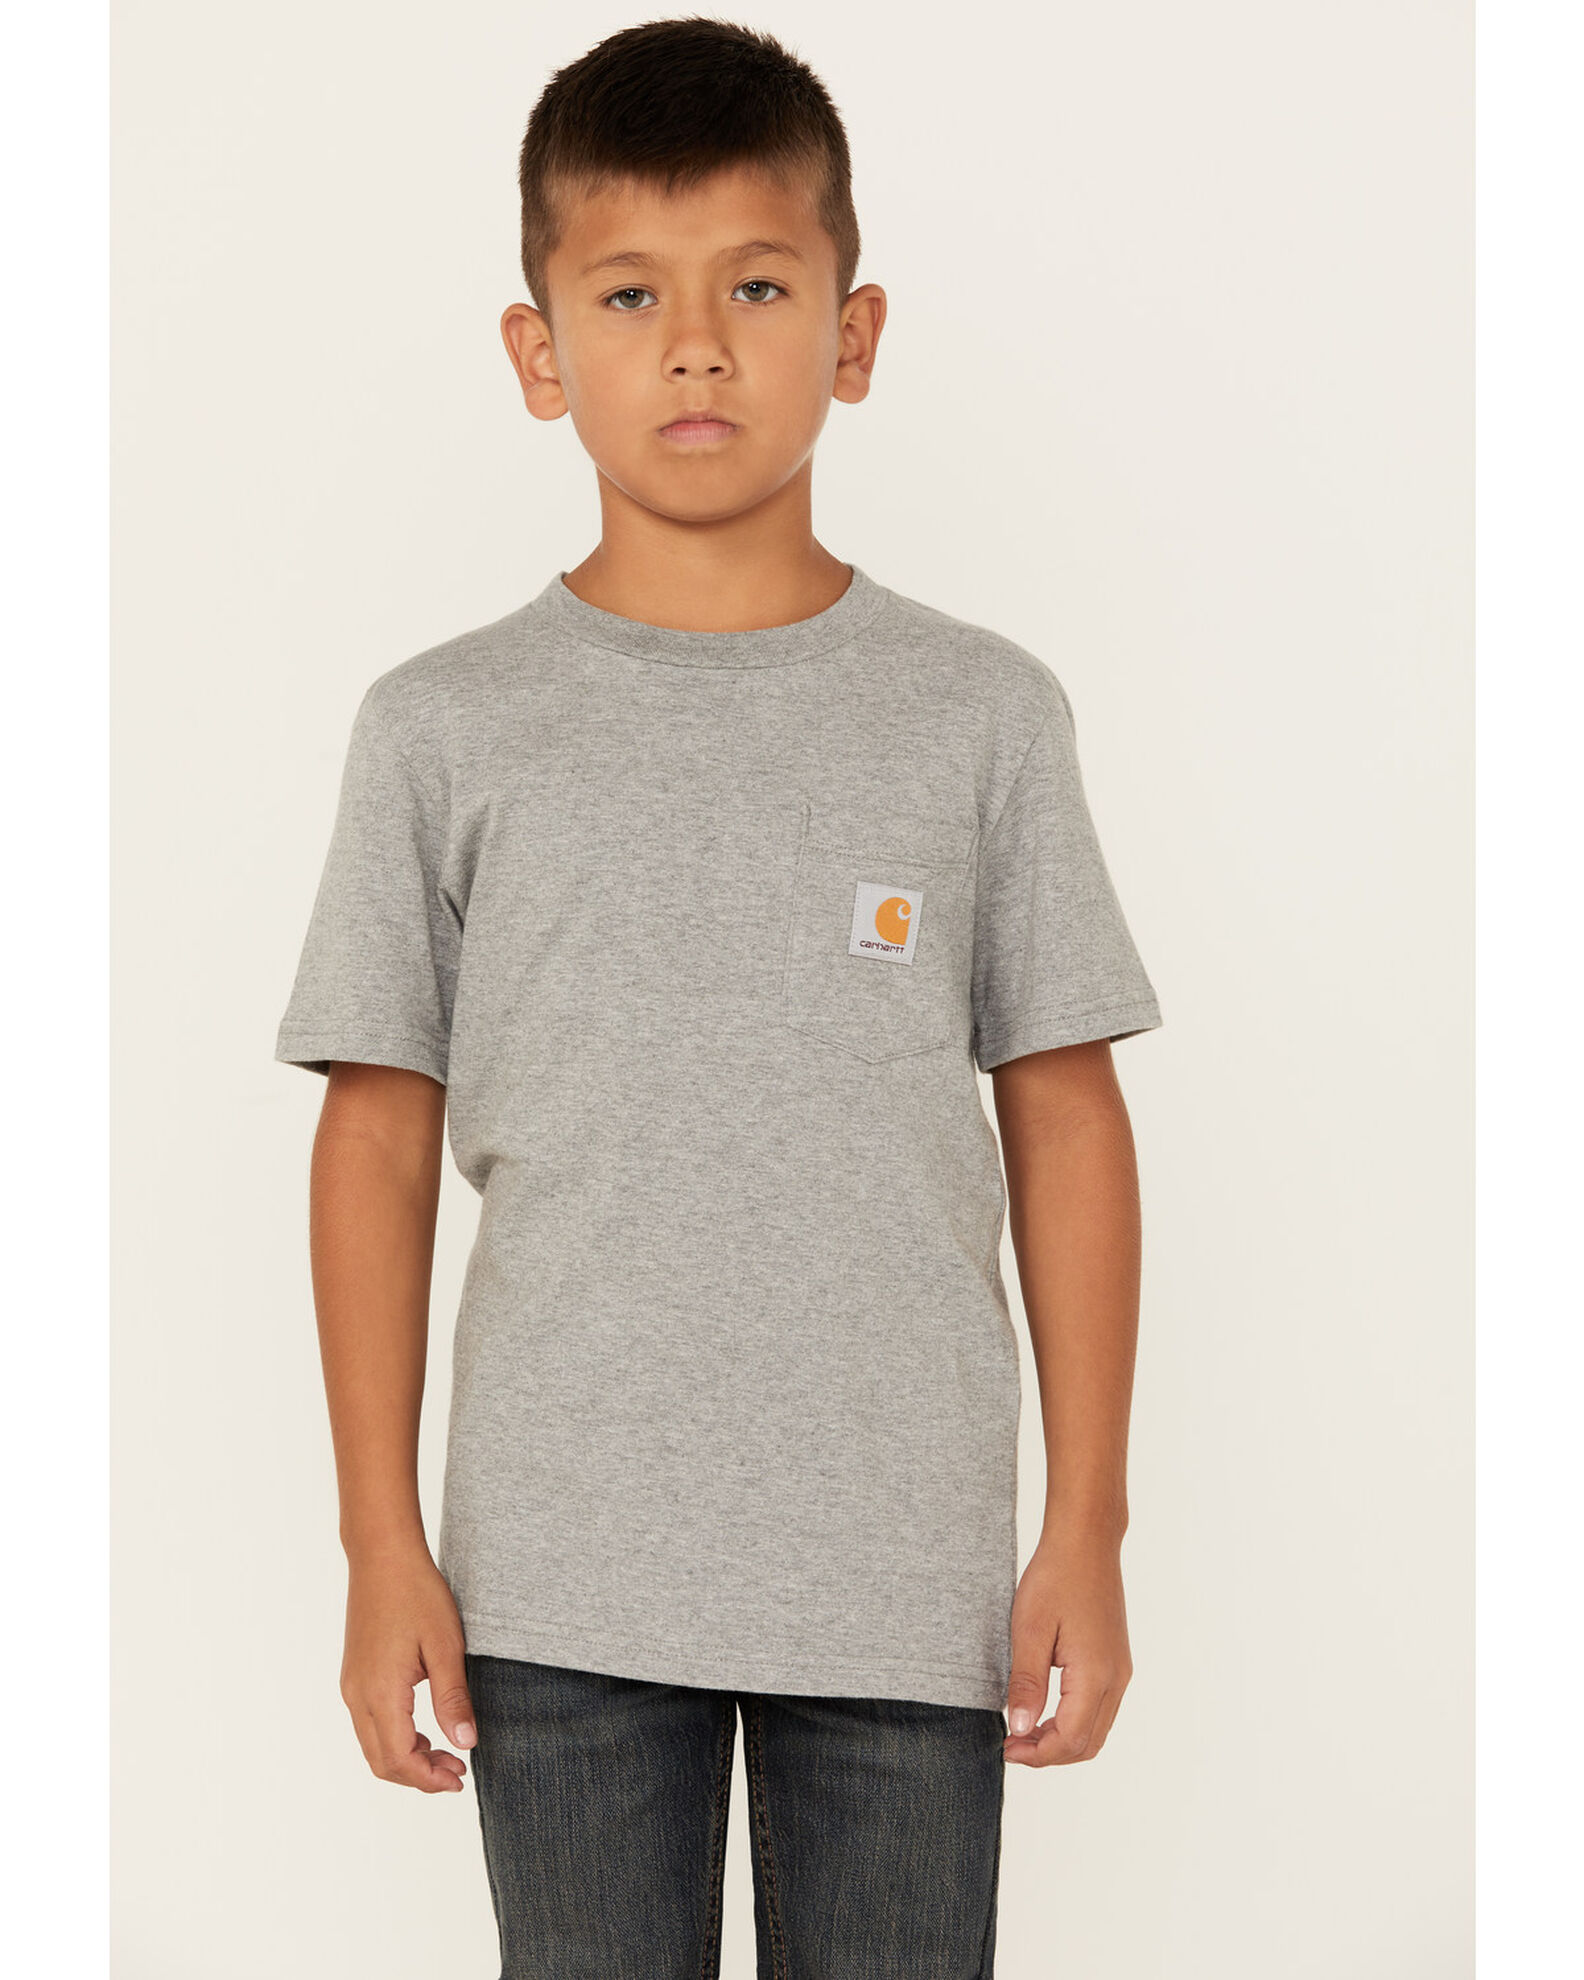 Carhartt Boys' Logo Pocket Short Sleeve T-Shirt